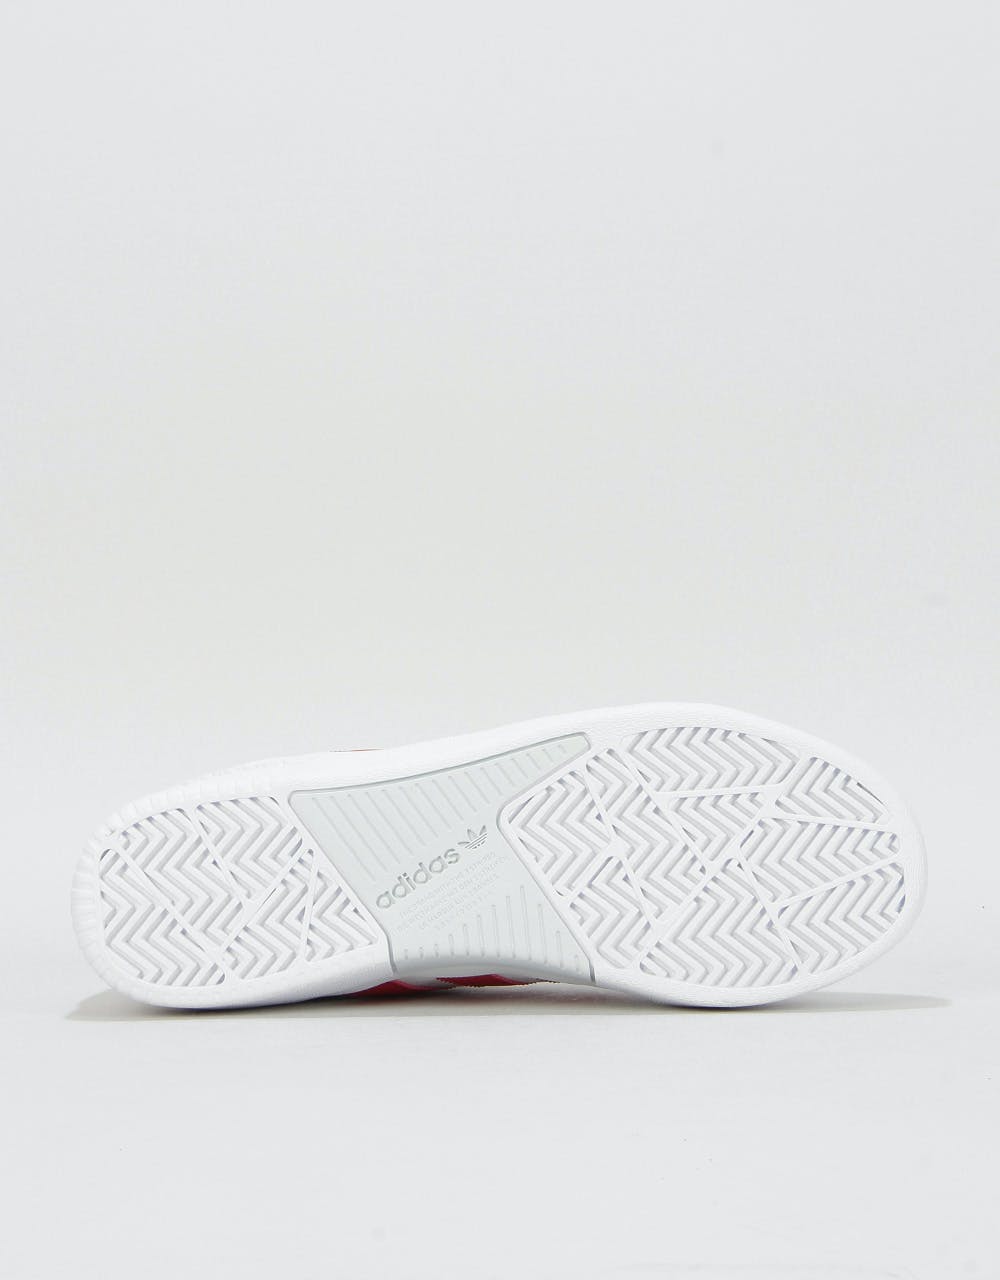 Adidas Tyshawn Skate Shoes - White/Scarlet/White